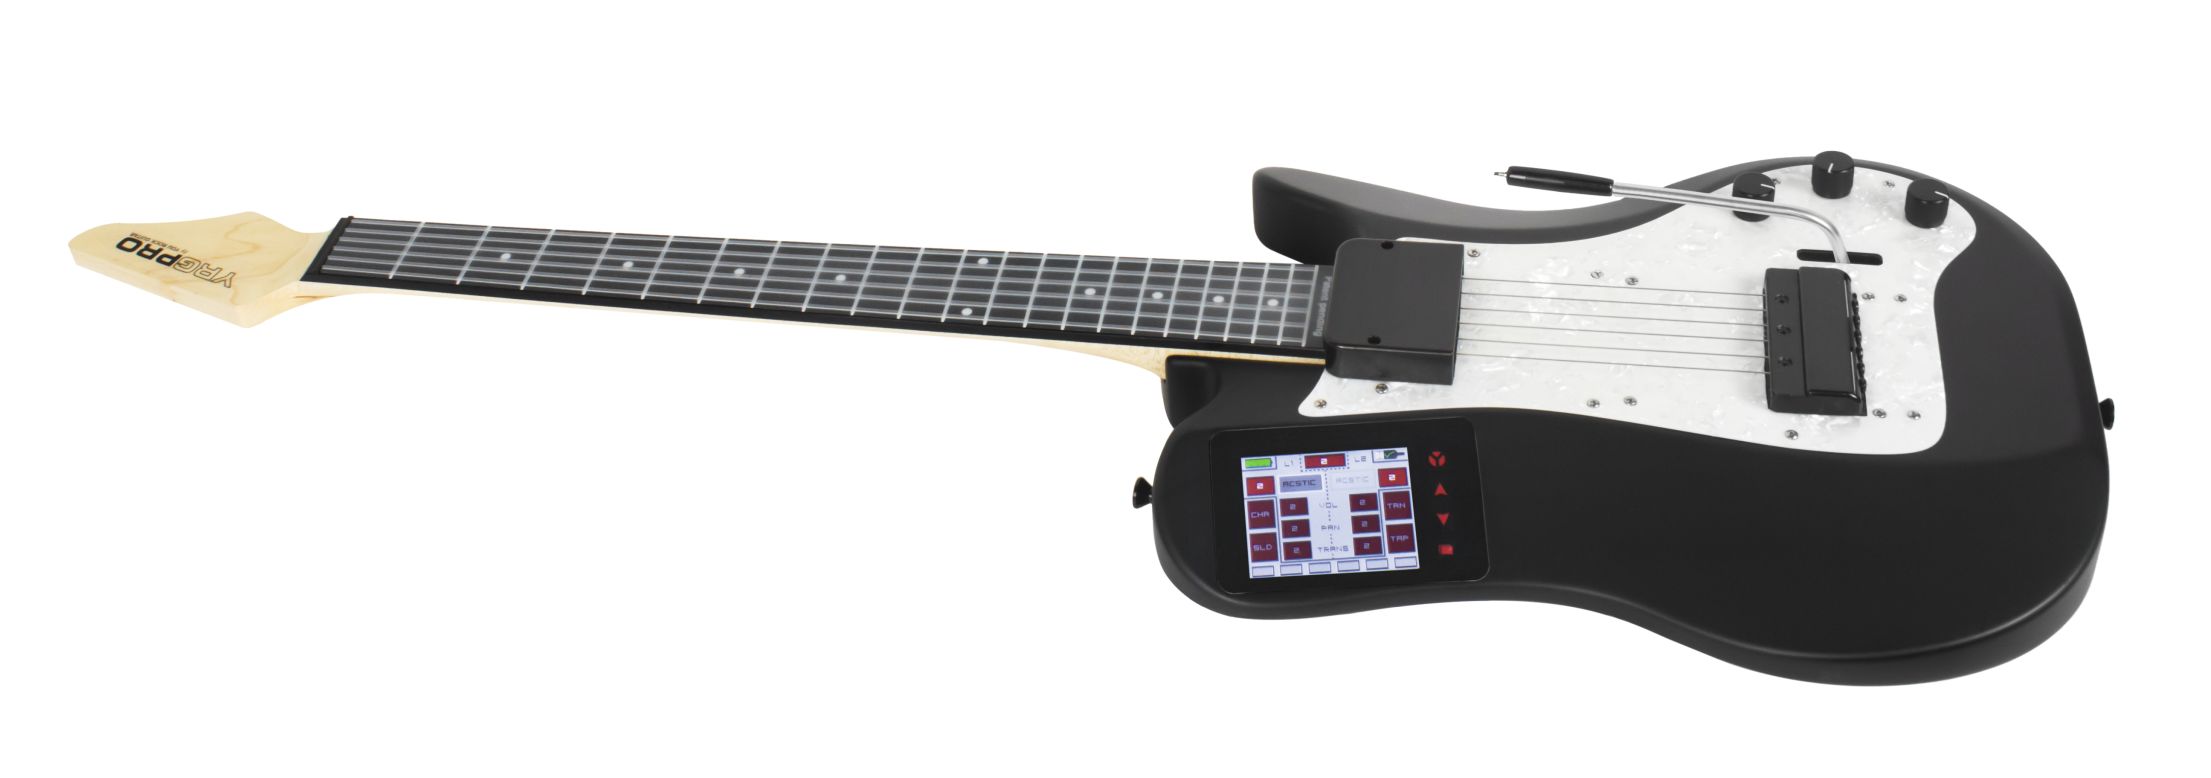 La Guitarra You Rock es una guitarra MIDI digital asequible. Fue diseñada para grabación en el hogar o en el estudio.